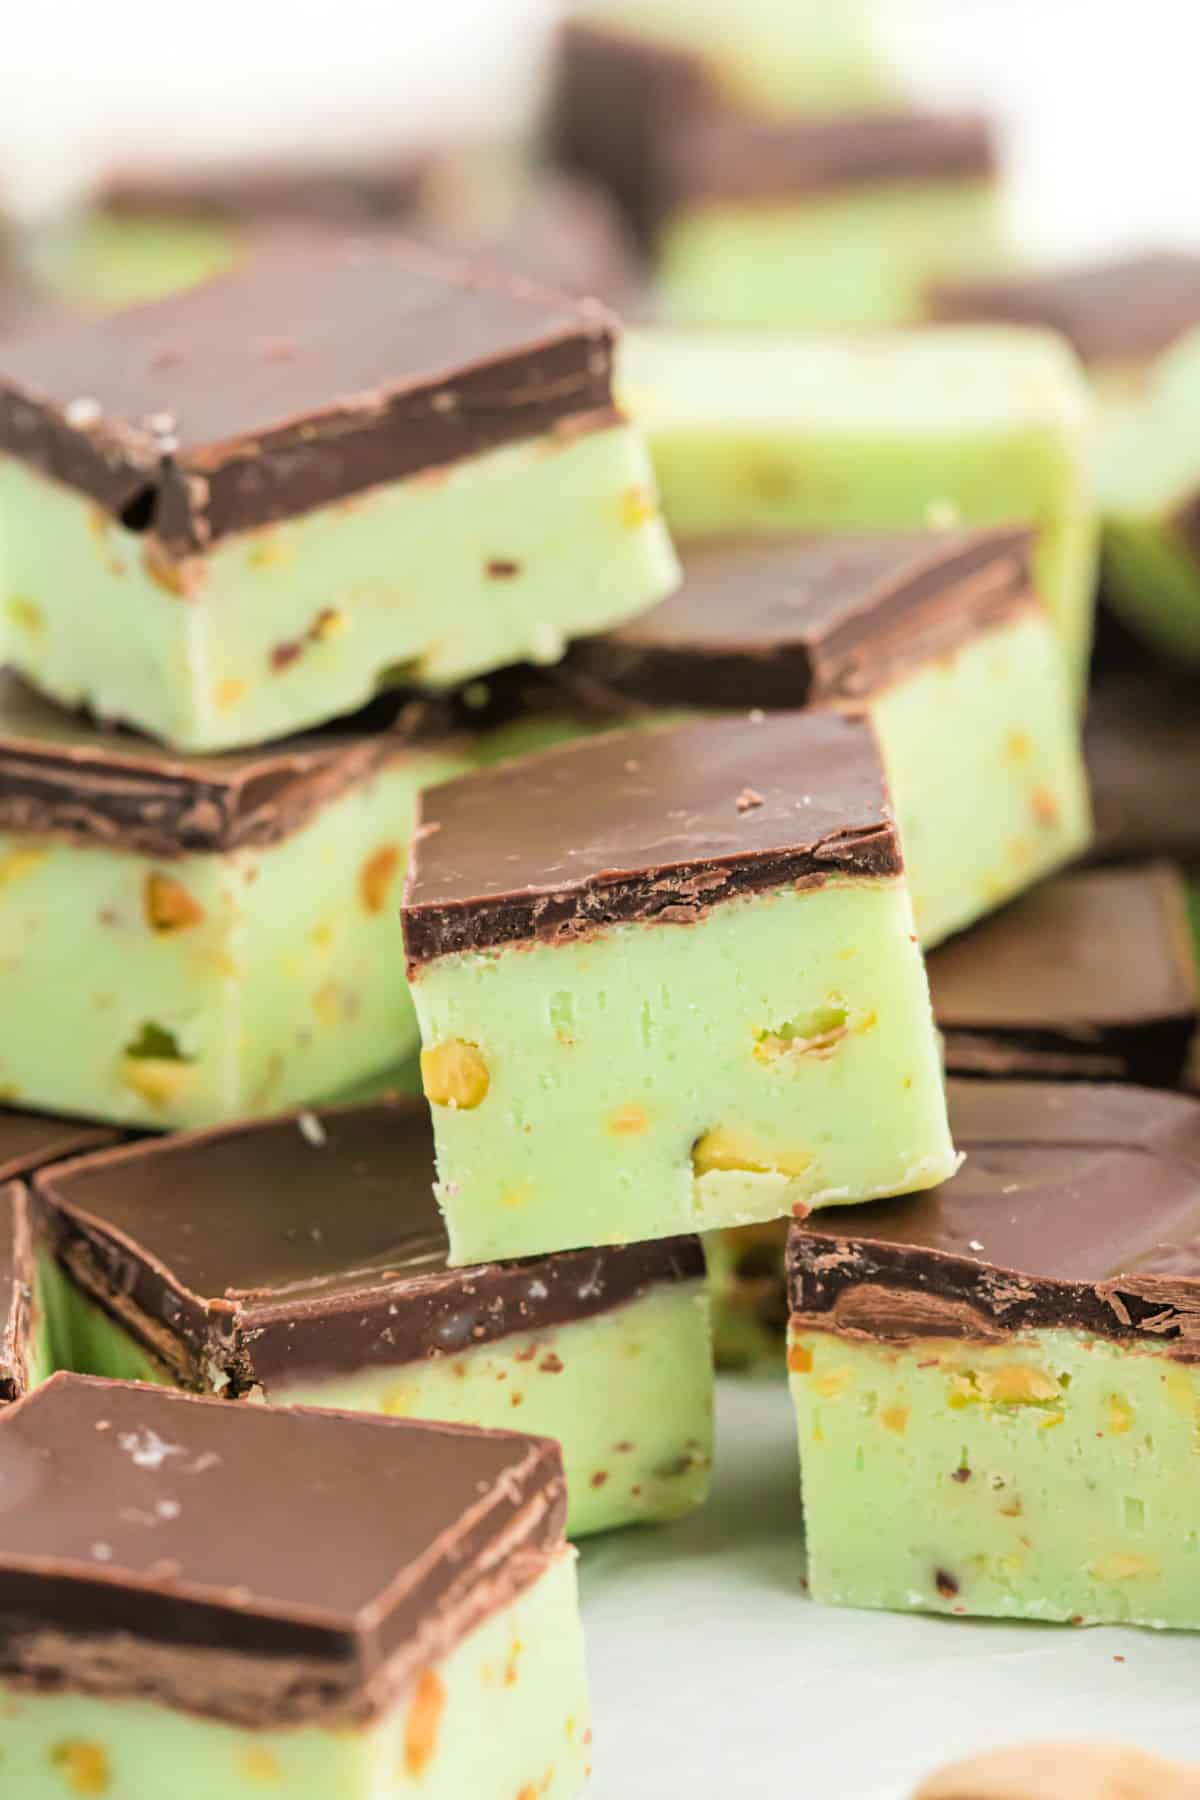 Pieces of pistachio fudge with dark chocolate cut into squares.